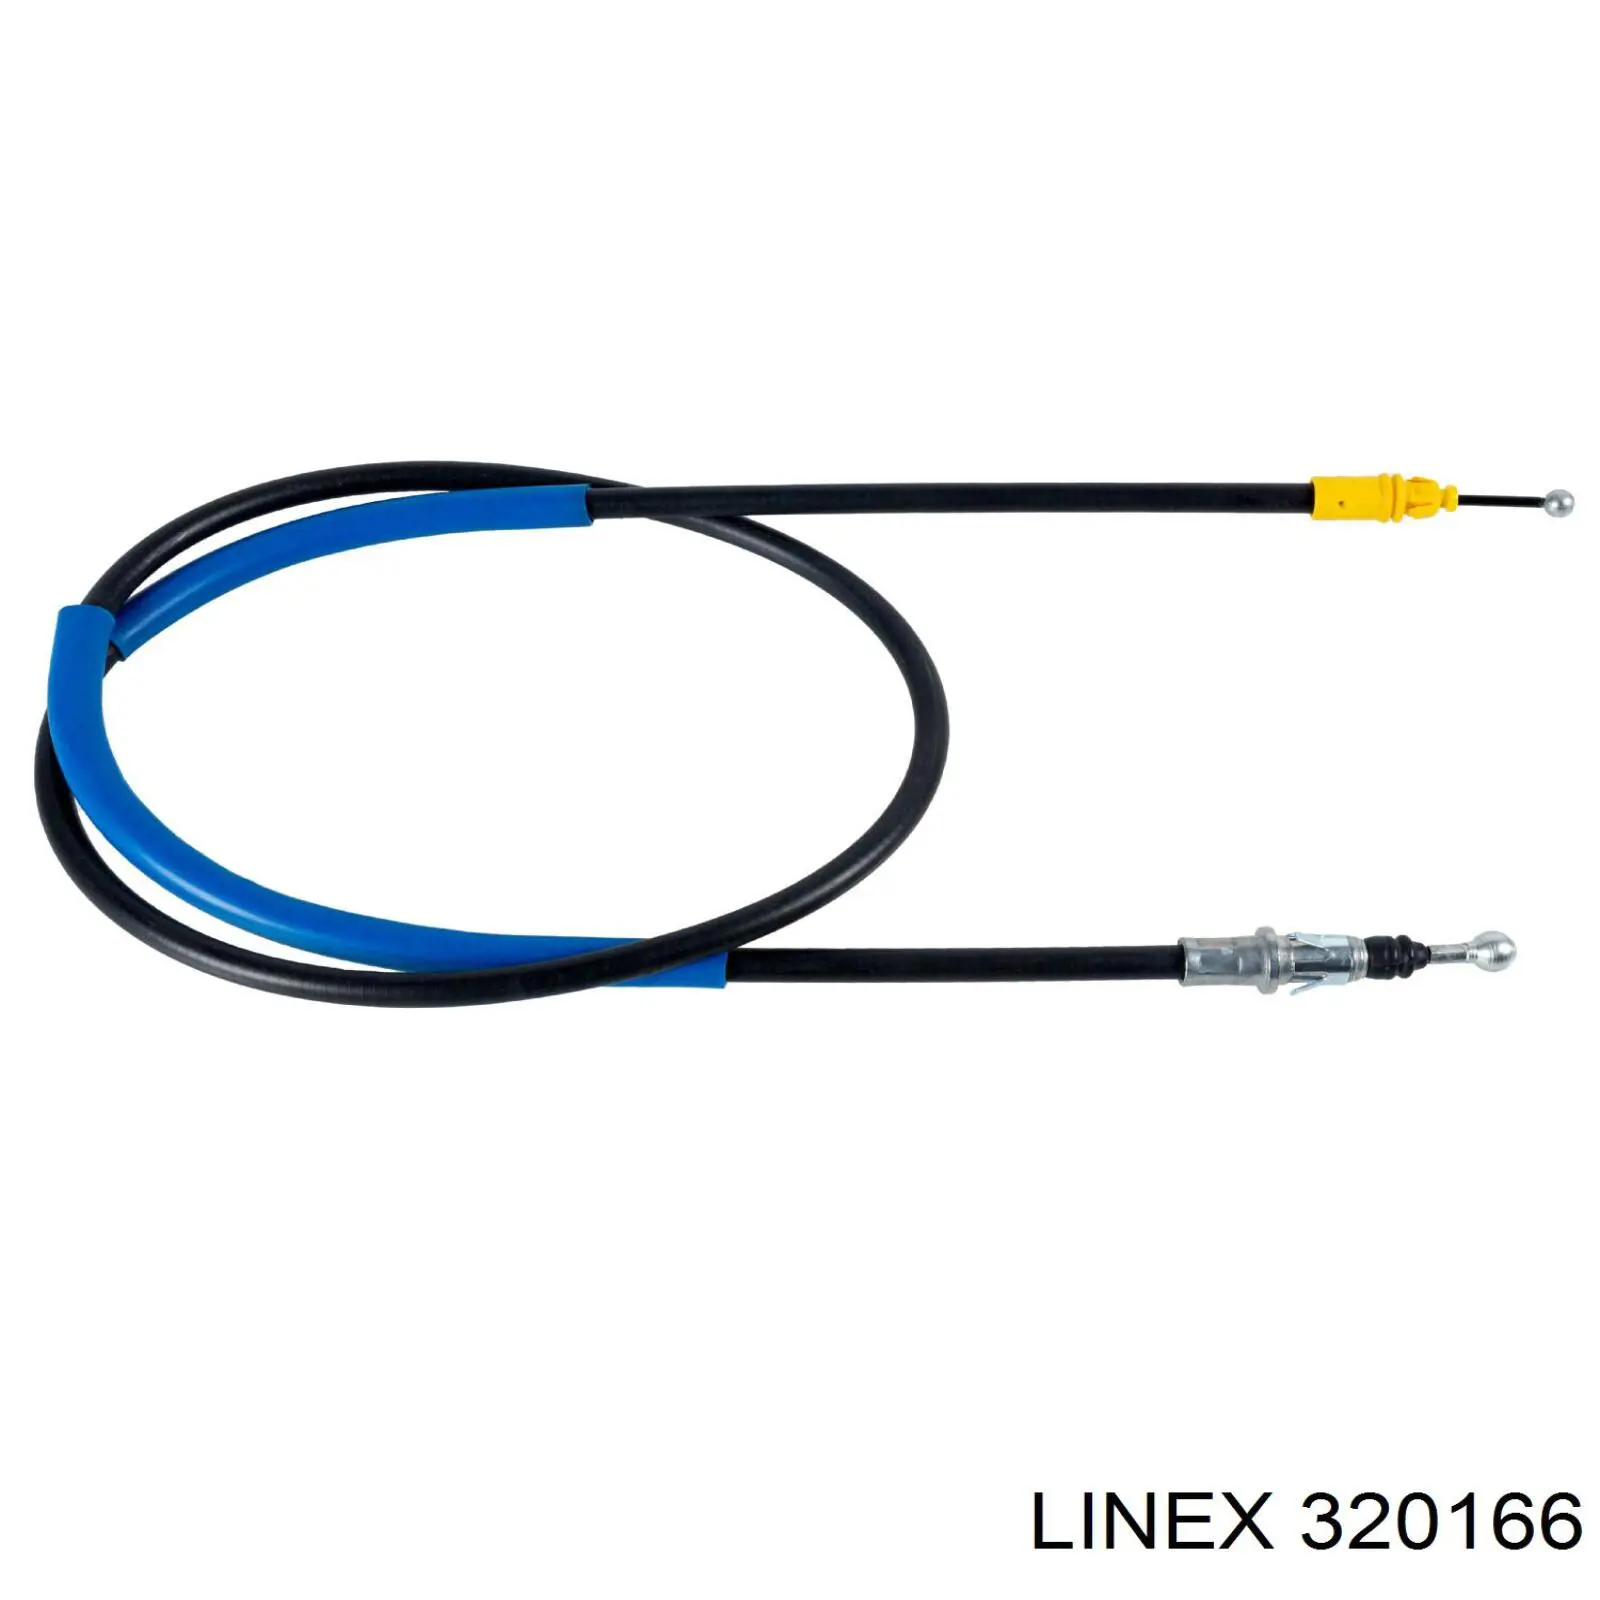 32.01.66 Linex cable de freno de mano trasero derecho/izquierdo